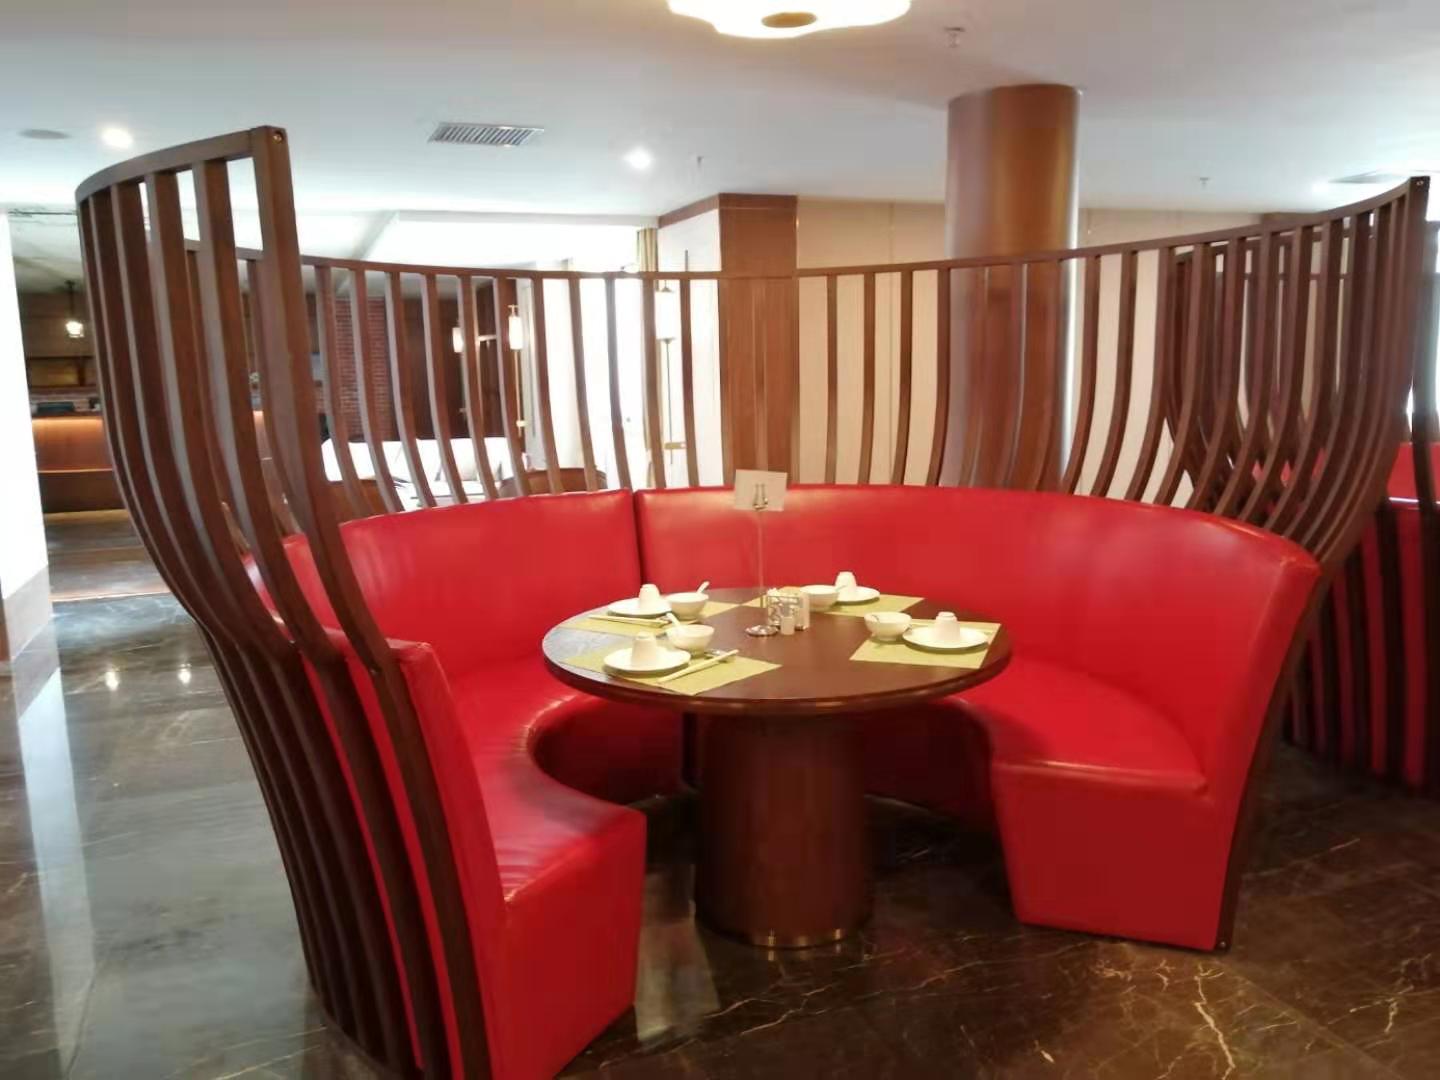 2022桂林平乐温德姆酒店·Chuan Ge-船歌中餐厅美食餐厅,是平乐唯一一家国际五星级酒...【去哪儿攻略】